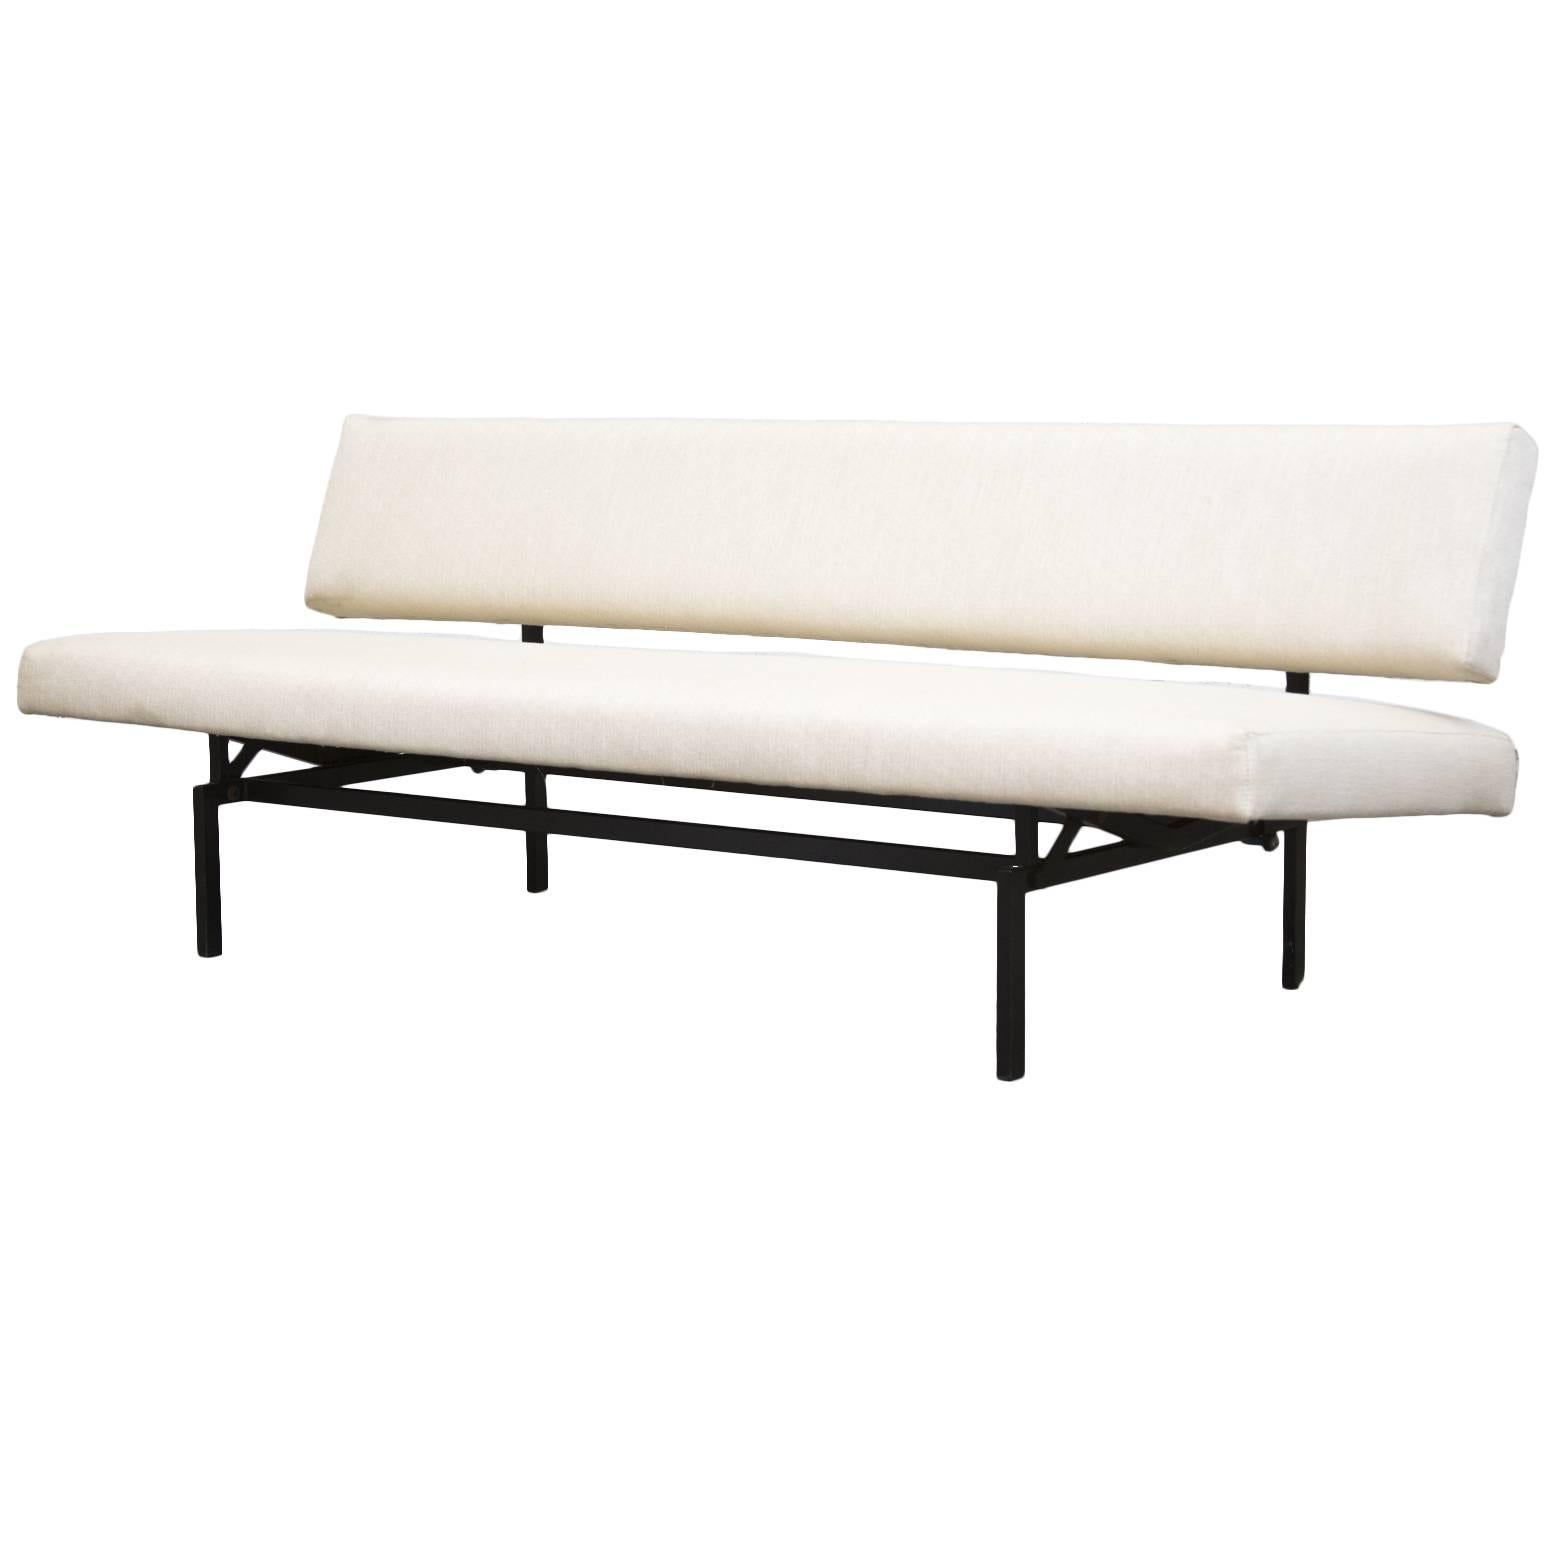 Bone White Upholstered Martin Visser Streamline Sleeper Sofa